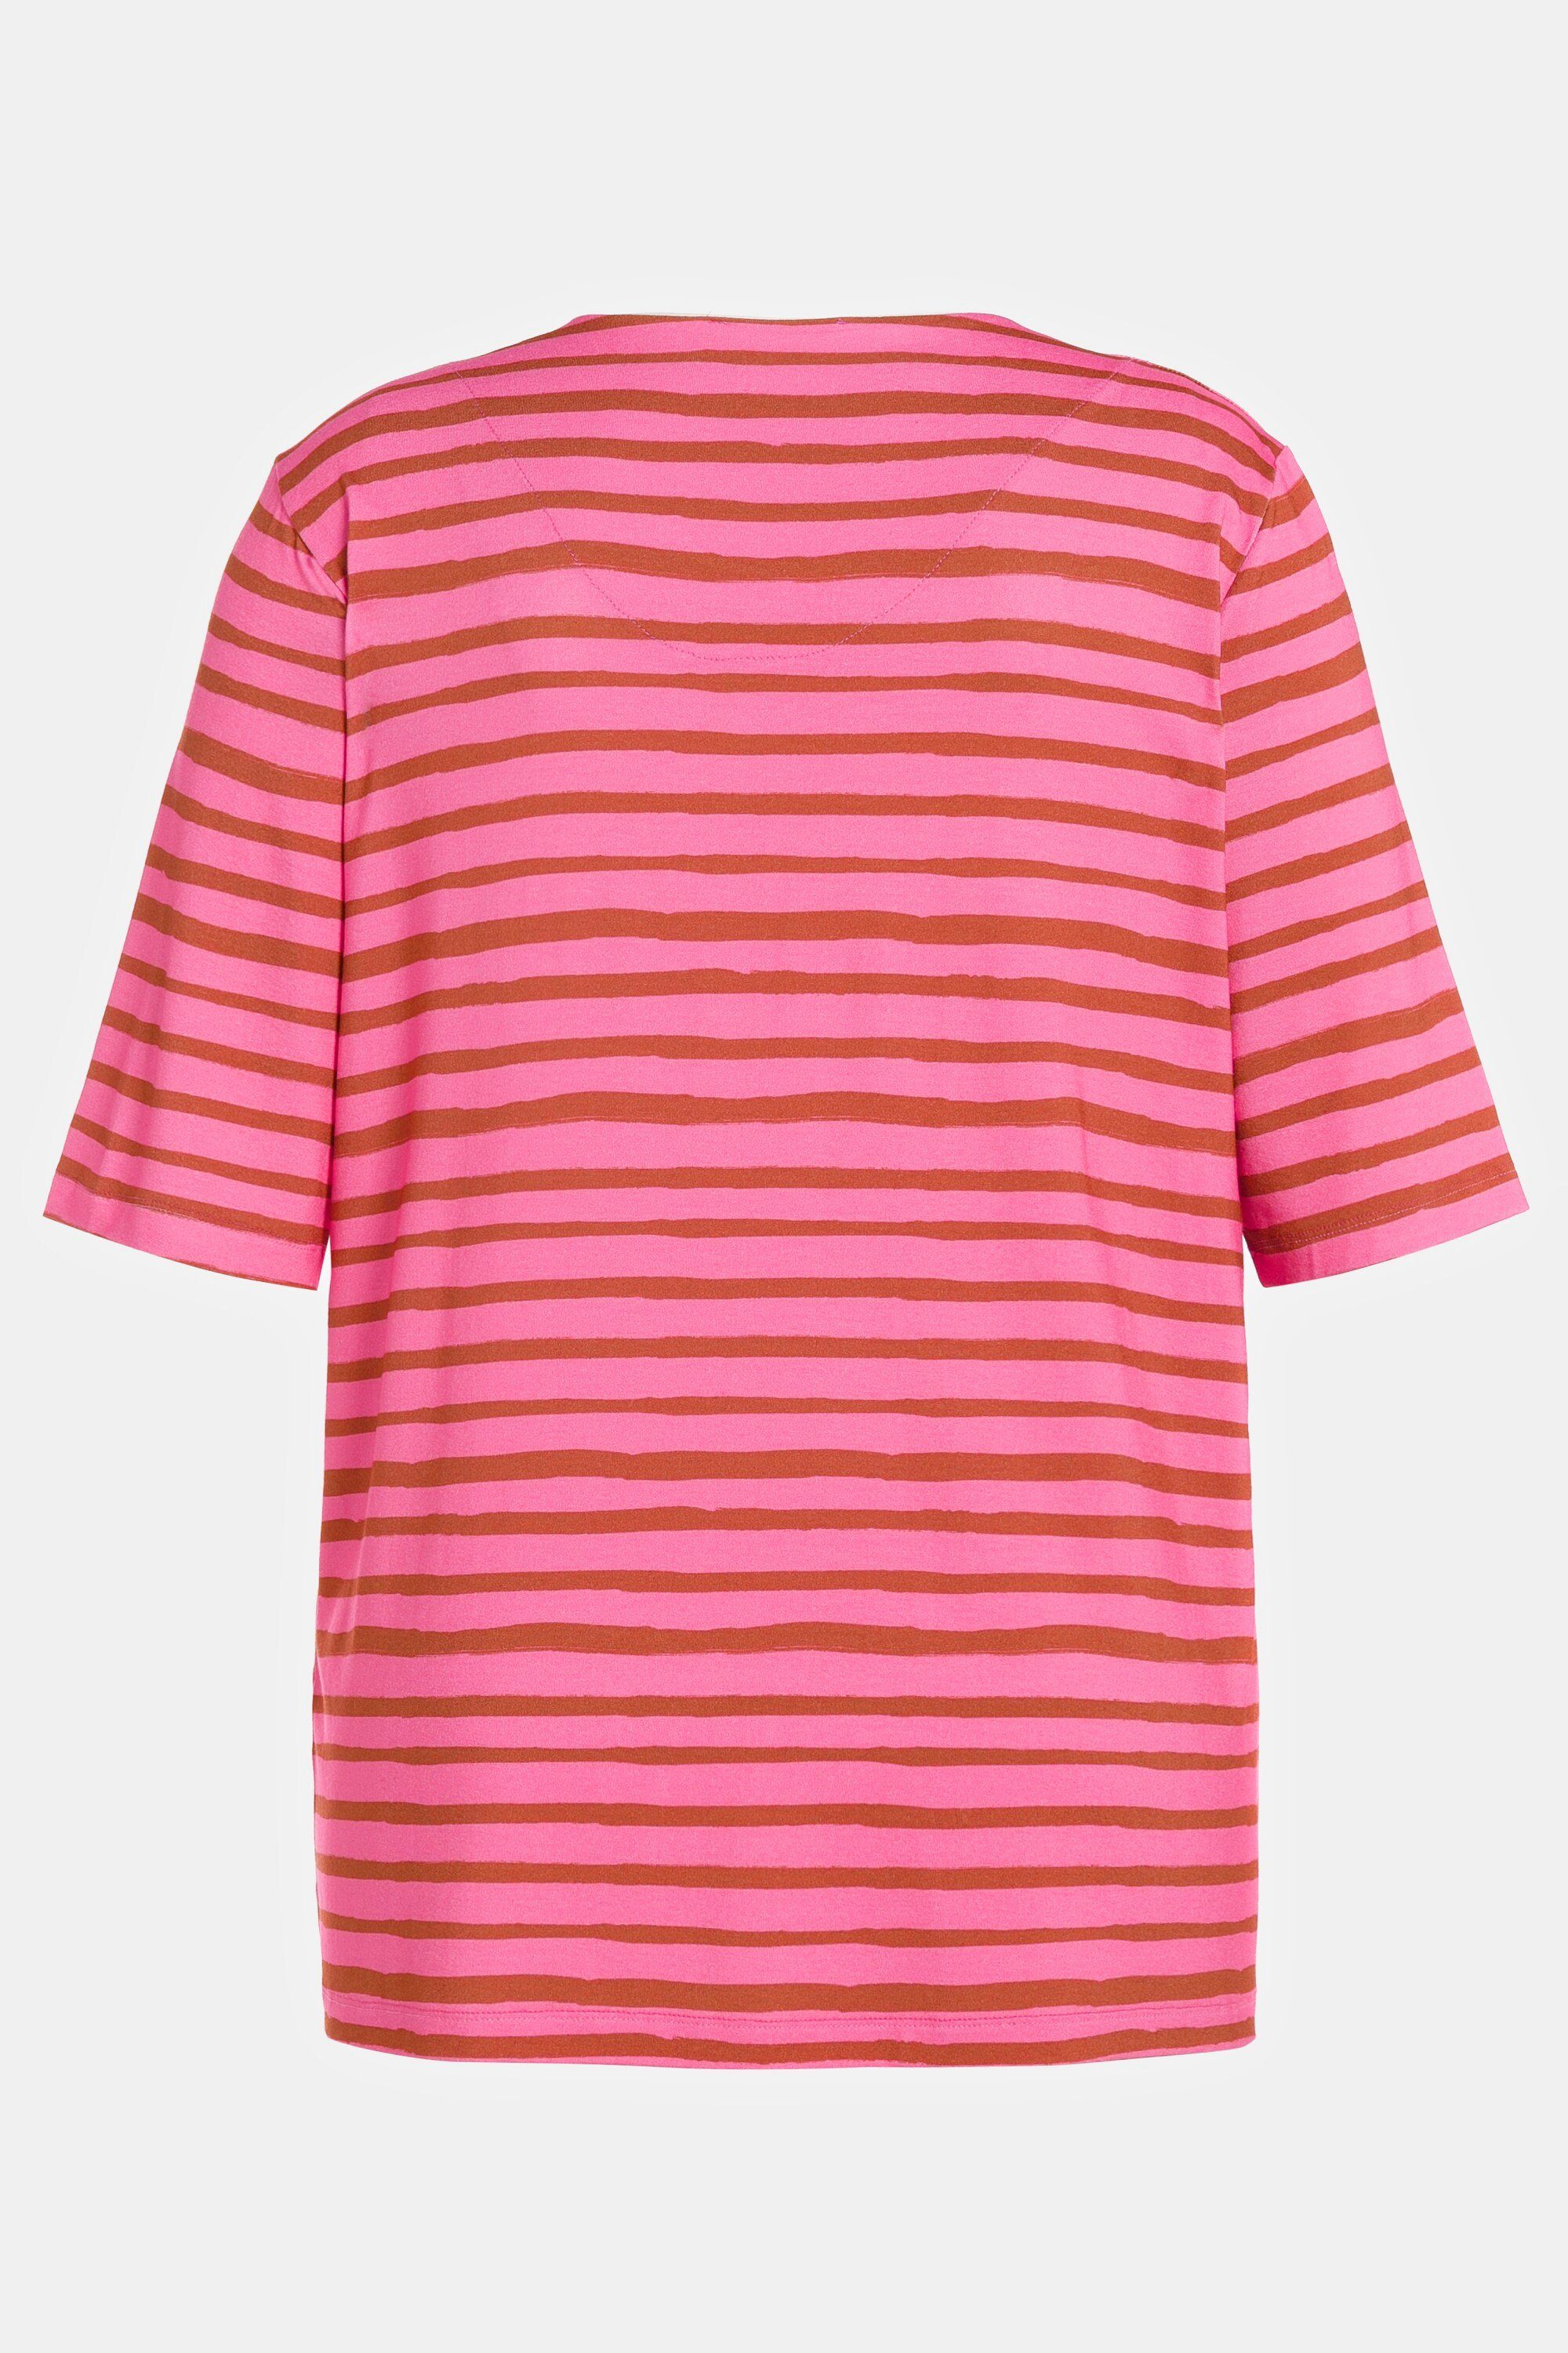 Popken Rundhalsshirt 3/4-Arm Ulla helles T-Shirt Streifen-Design pink Rundhals